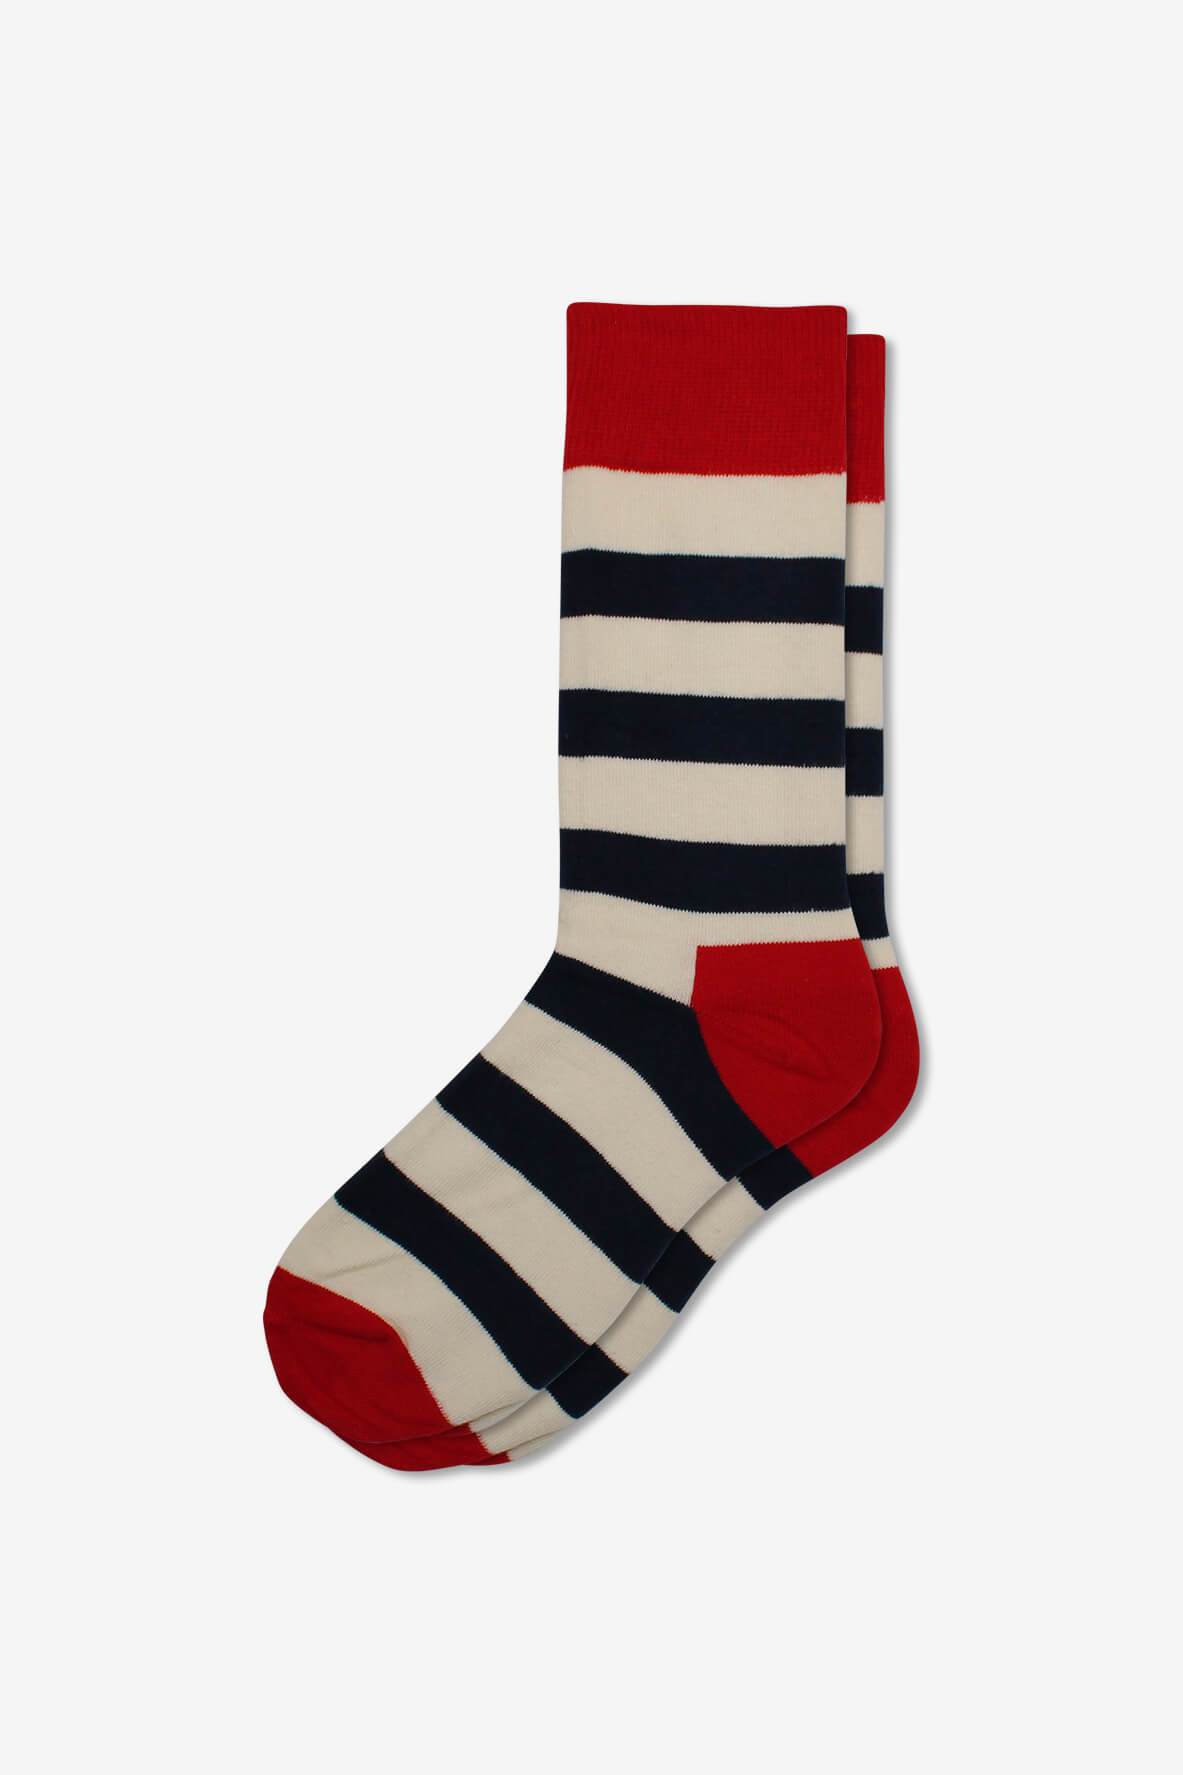 Socks IMG_5358, socks, GoTie